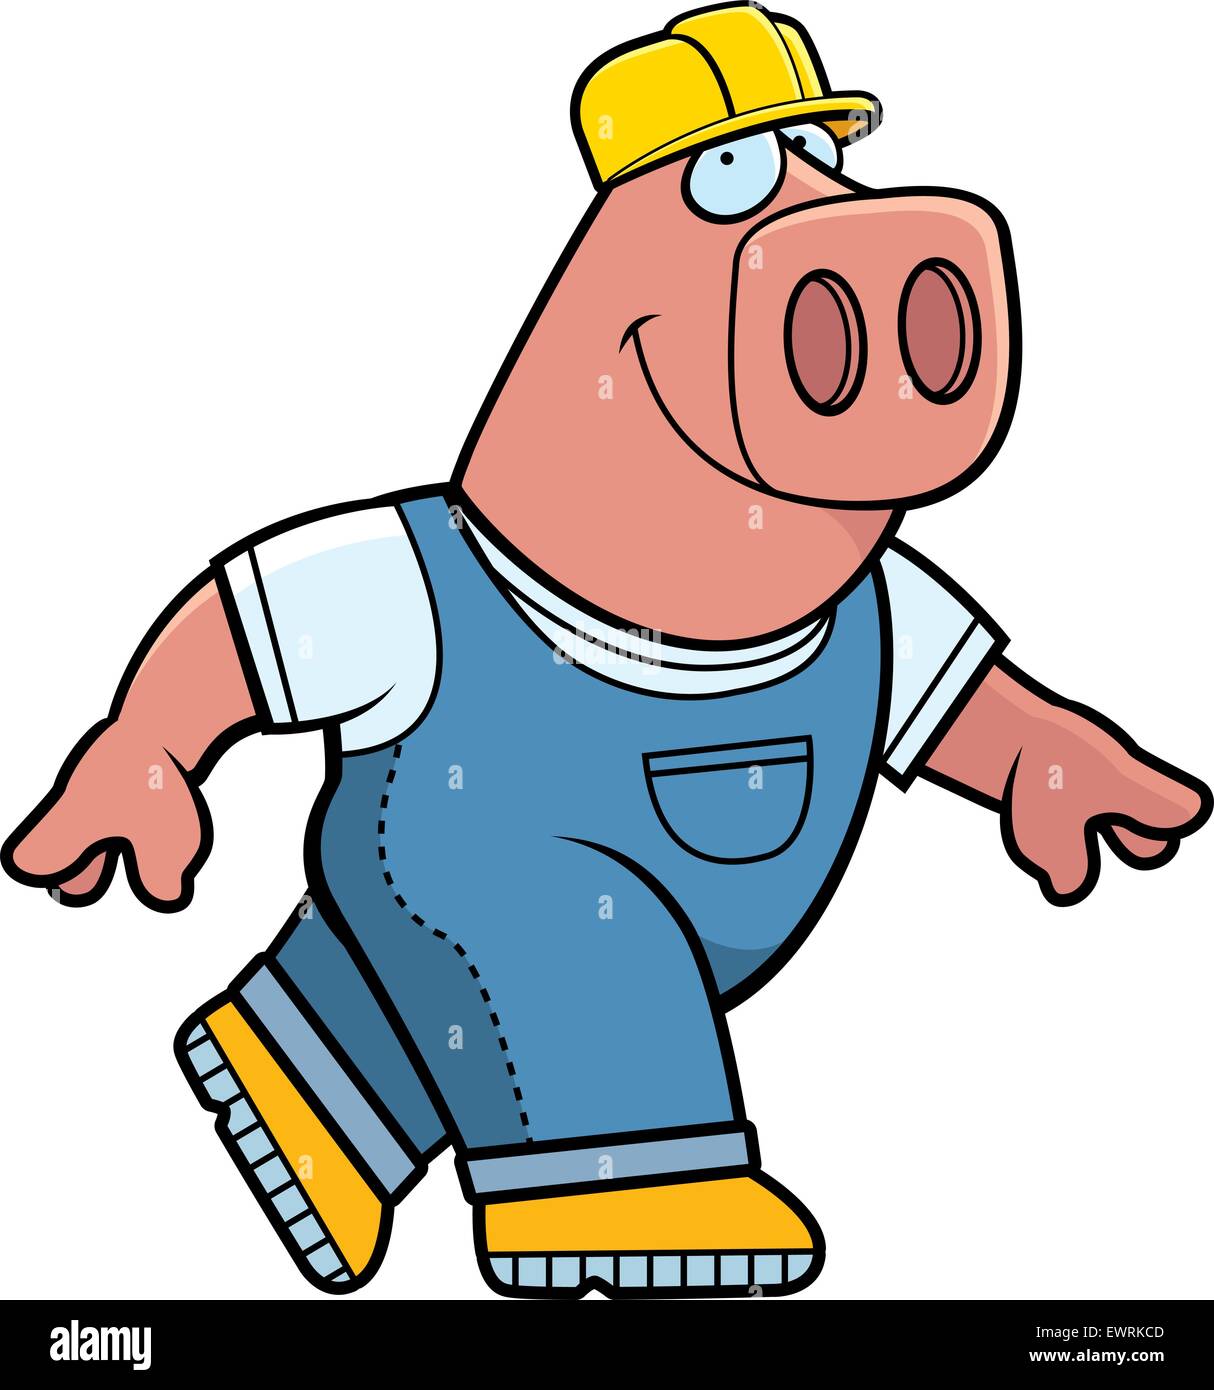 Ein glückliches Cartoon-Generator Schwein mit einem Helm Stock-Vektorgrafik  - Alamy